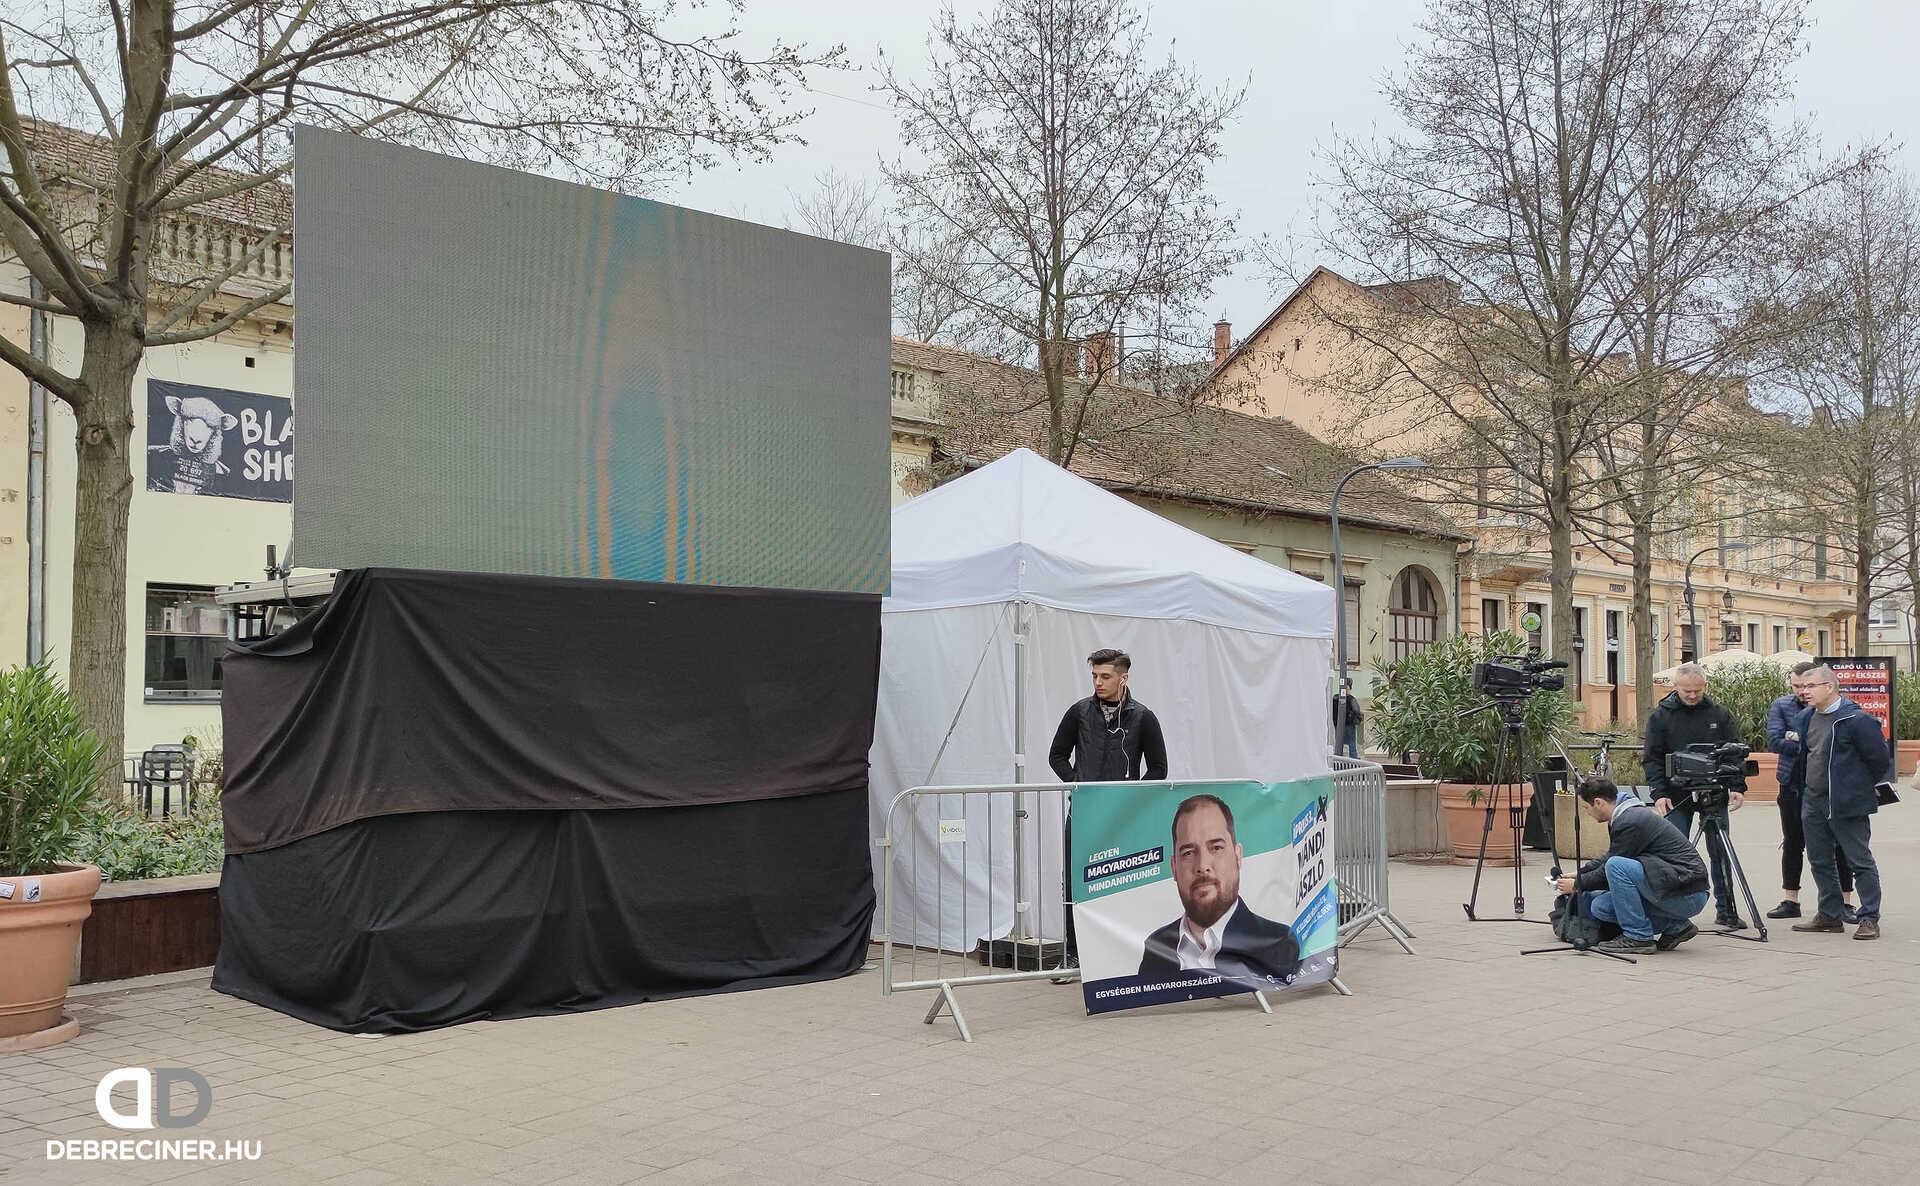 Debreciner: nem működik az ellenzék kampányledfala Debrecenben, mert nem kapnak áramot